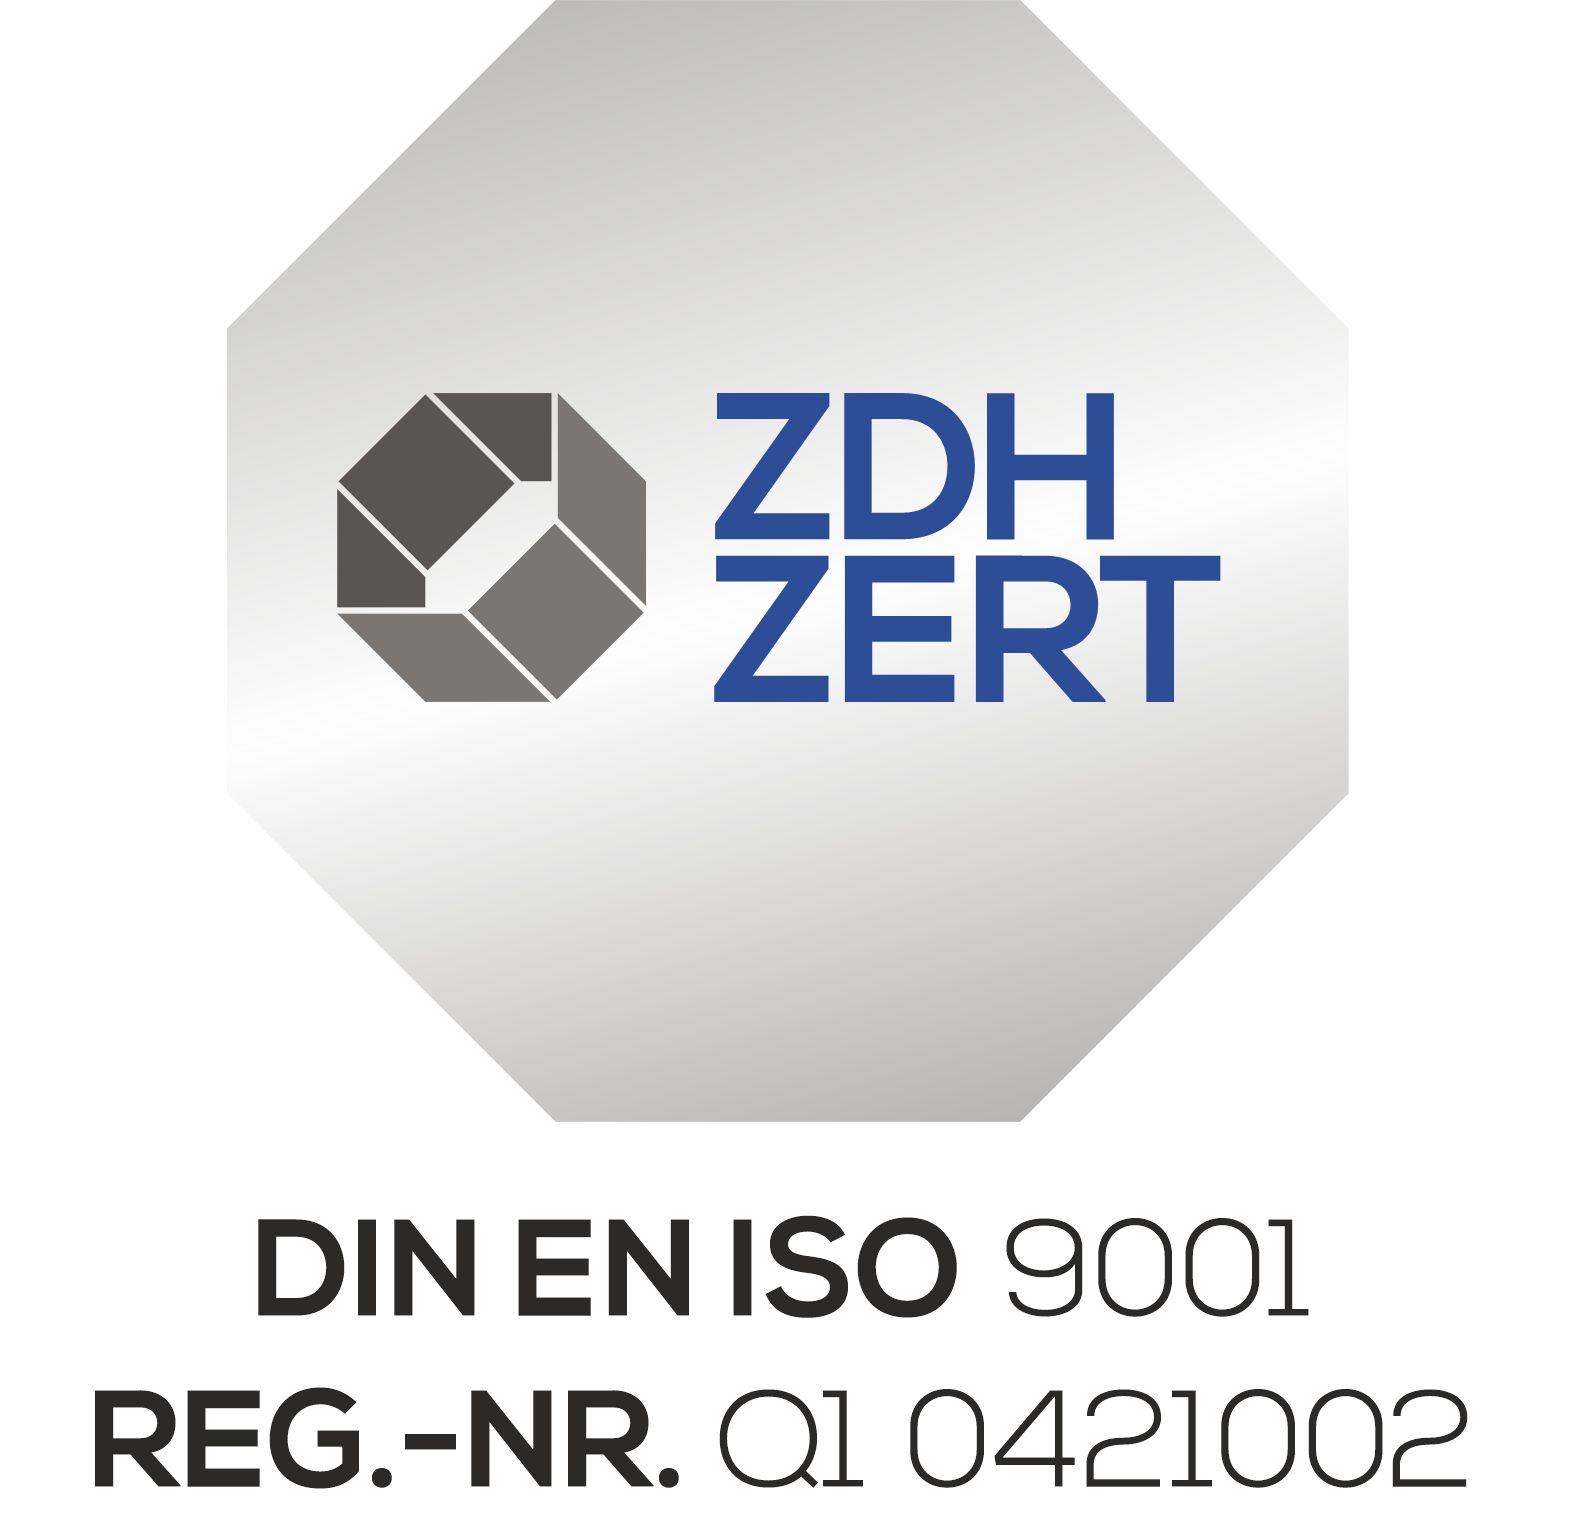 ZDH-ZERT - Zertifiziert nach DIN EN ISO 9001